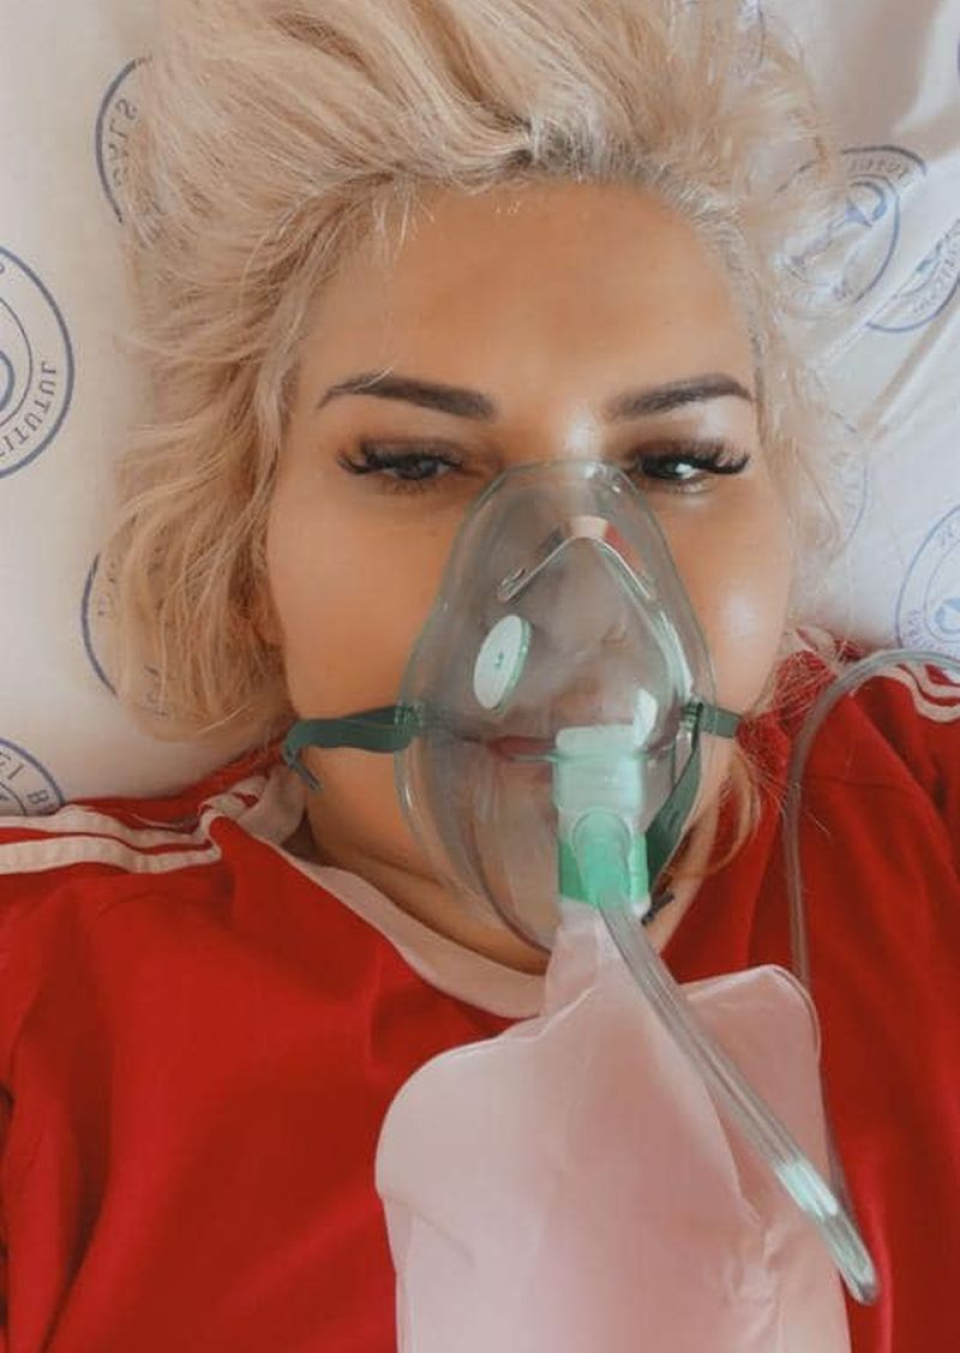 Viorica din Clejani a avut nevoie de masca cu oxigen. Foto: Facebook / pagina personală